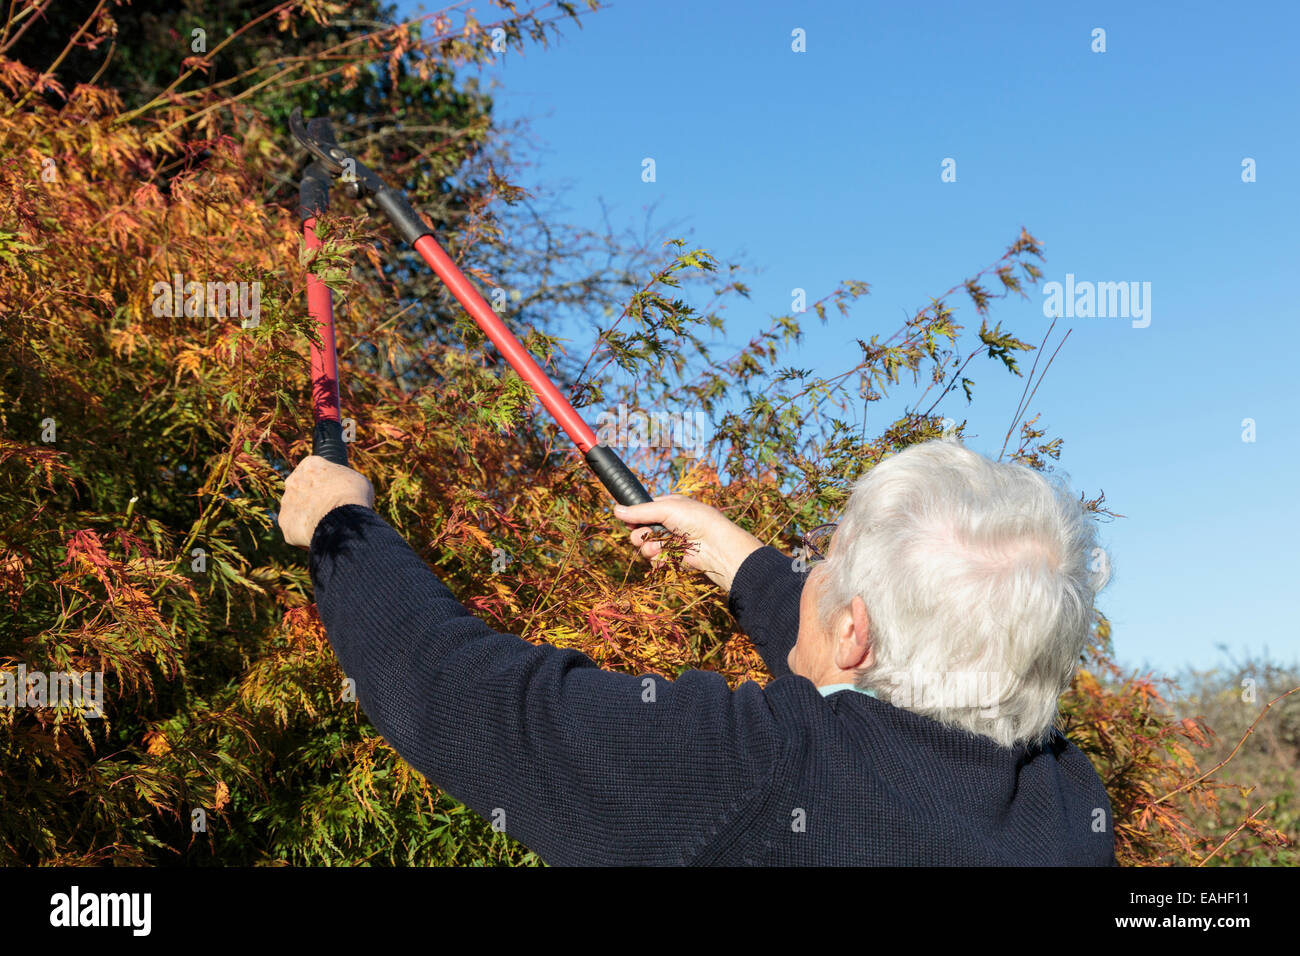 Donna senior che fa giardinaggio utilizzando i locatori per tagliare un cespuglio giardino in autunno, un'attività familiare. Inghilterra, Regno Unito, Gran Bretagna. Foto Stock